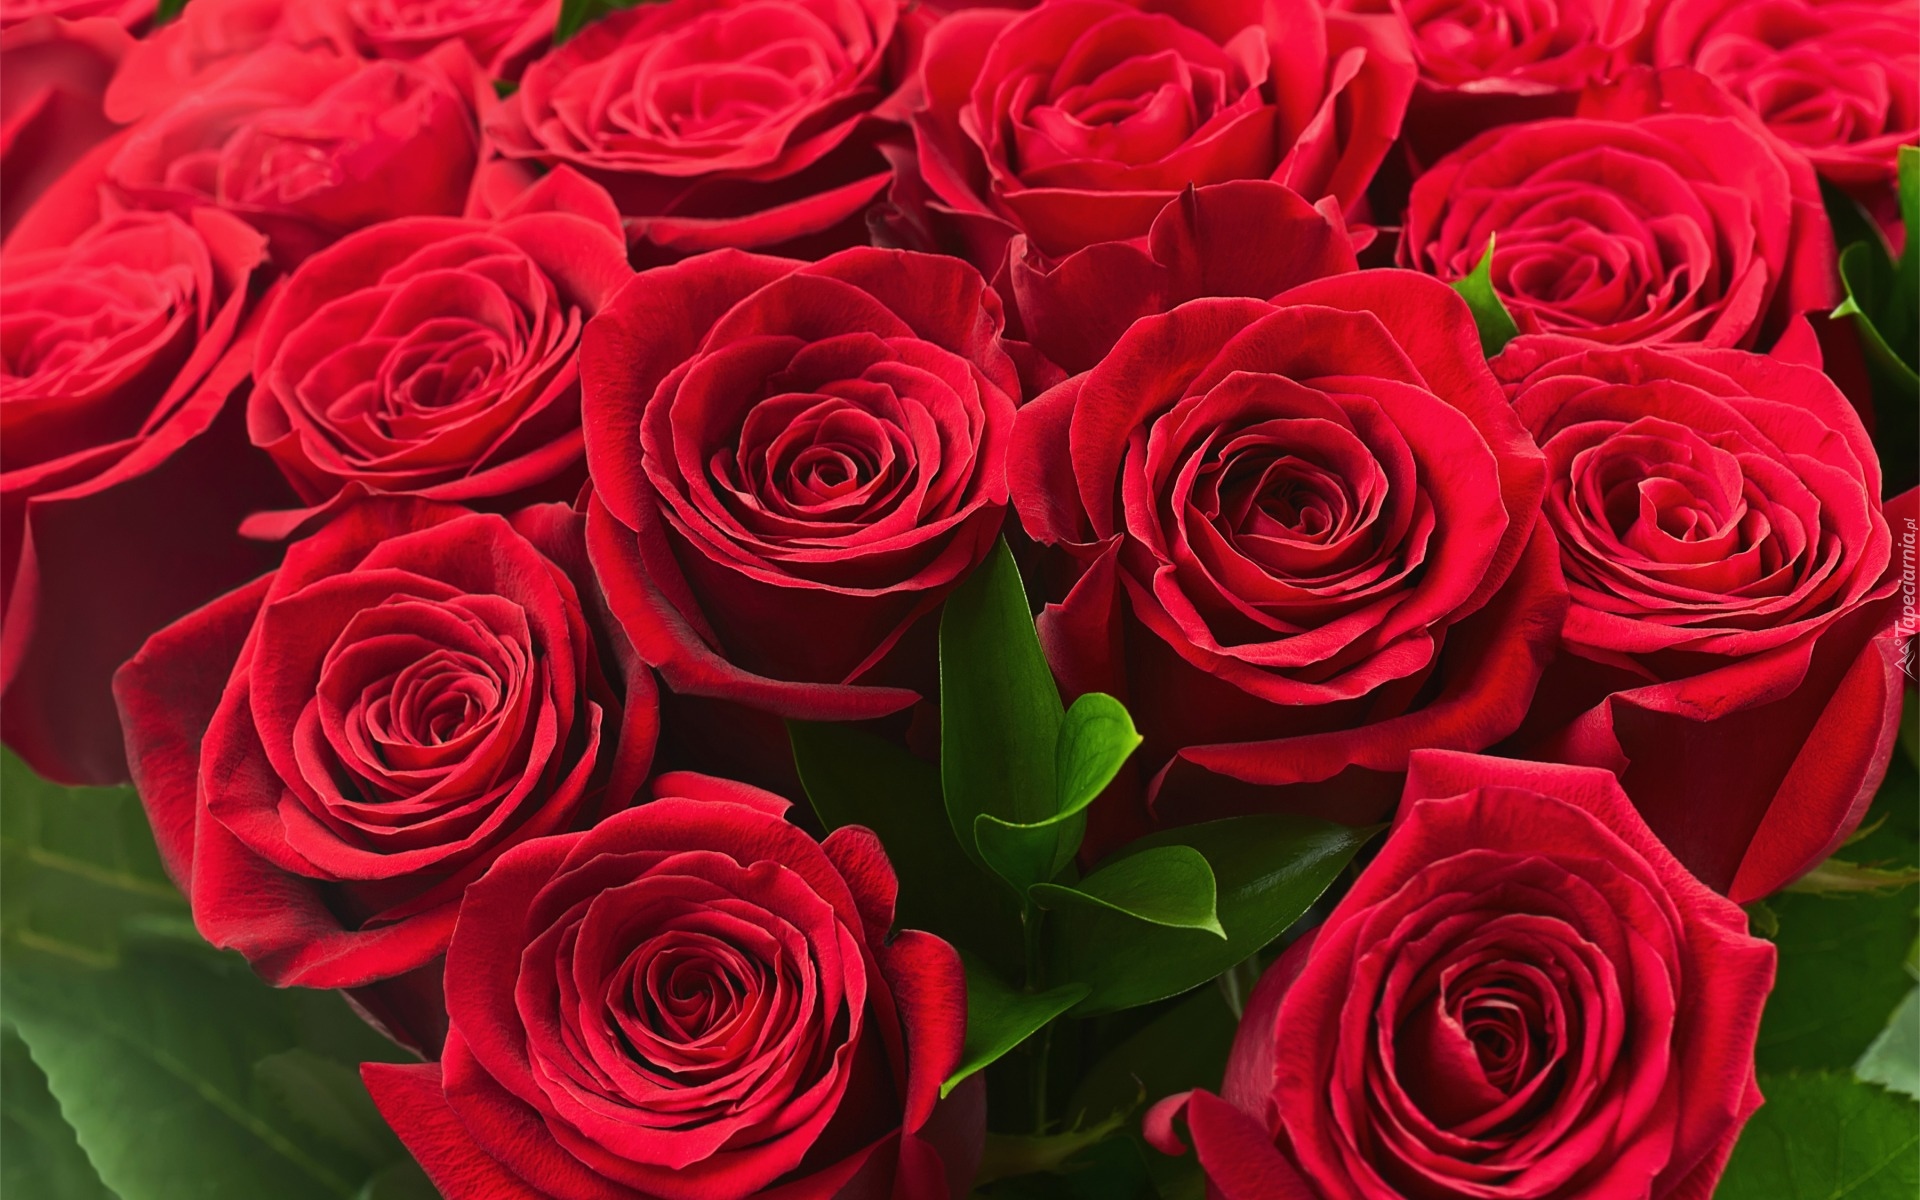 Kwiaty, Bukiet, Róże, Czerwone